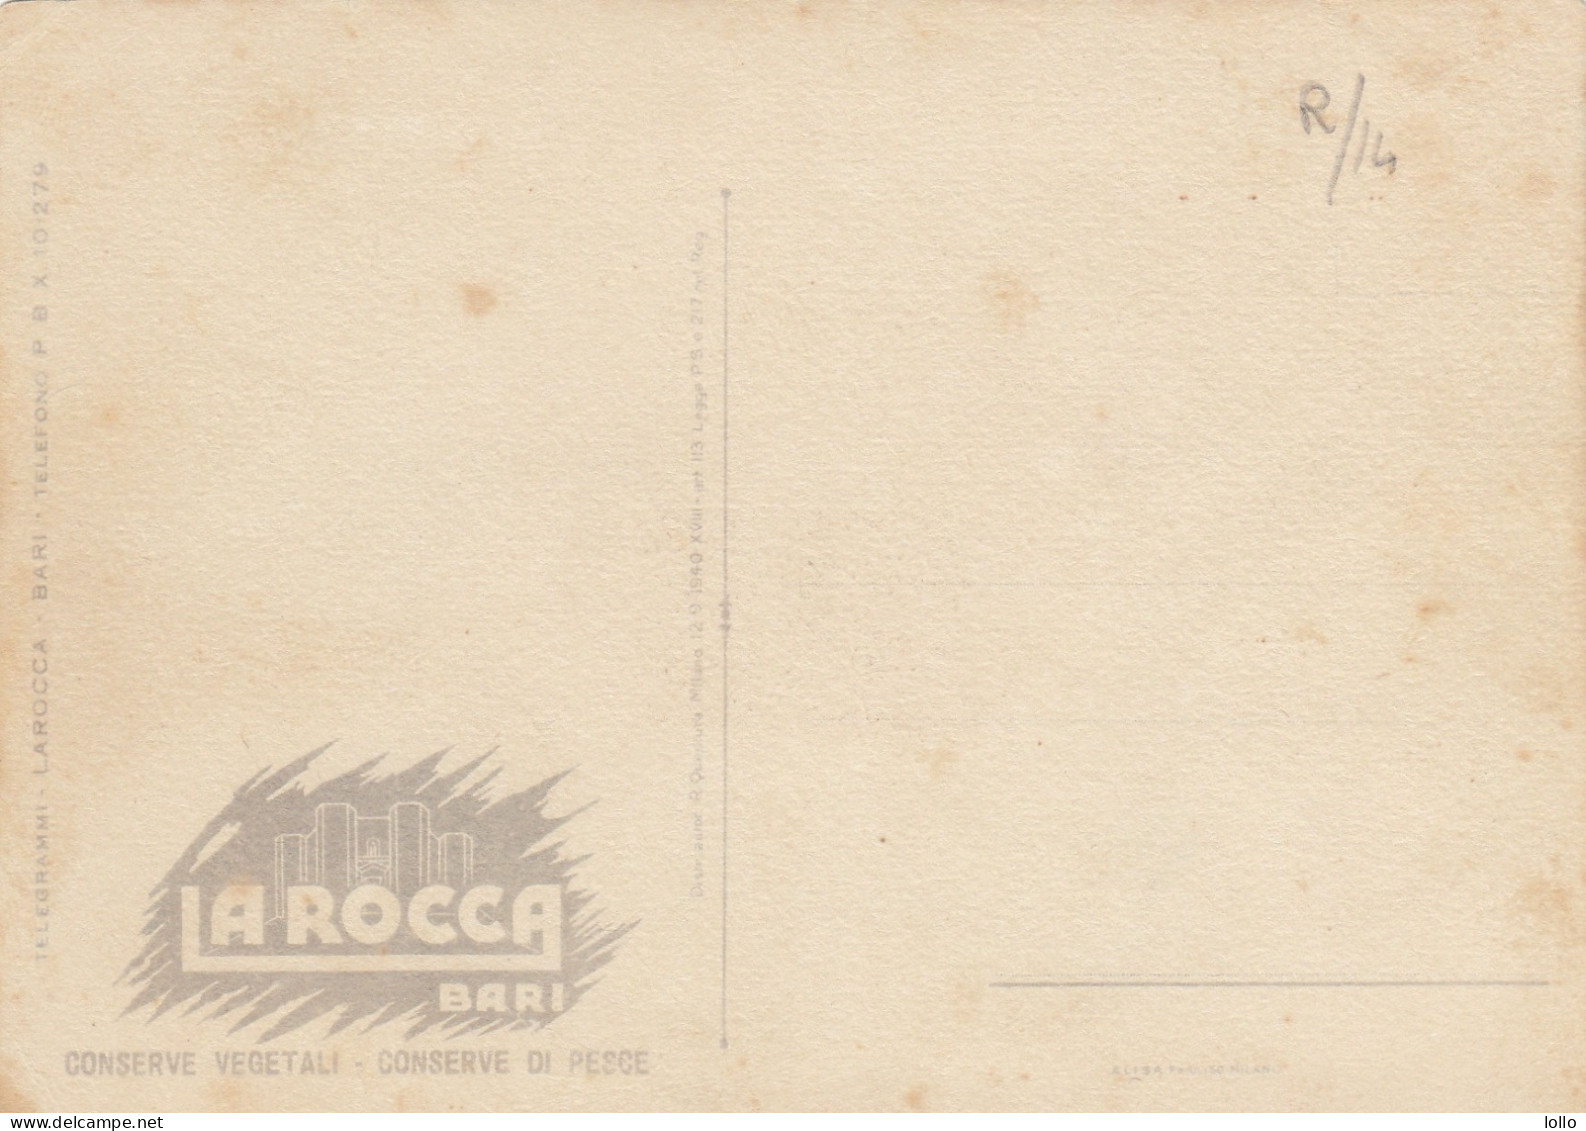 Pubblicitarie -  La Rocca  -  Conserve - Bari   -  F. Grande  -  Nuova  - Molto Bella  - F.ta  Boccasile - Werbepostkarten